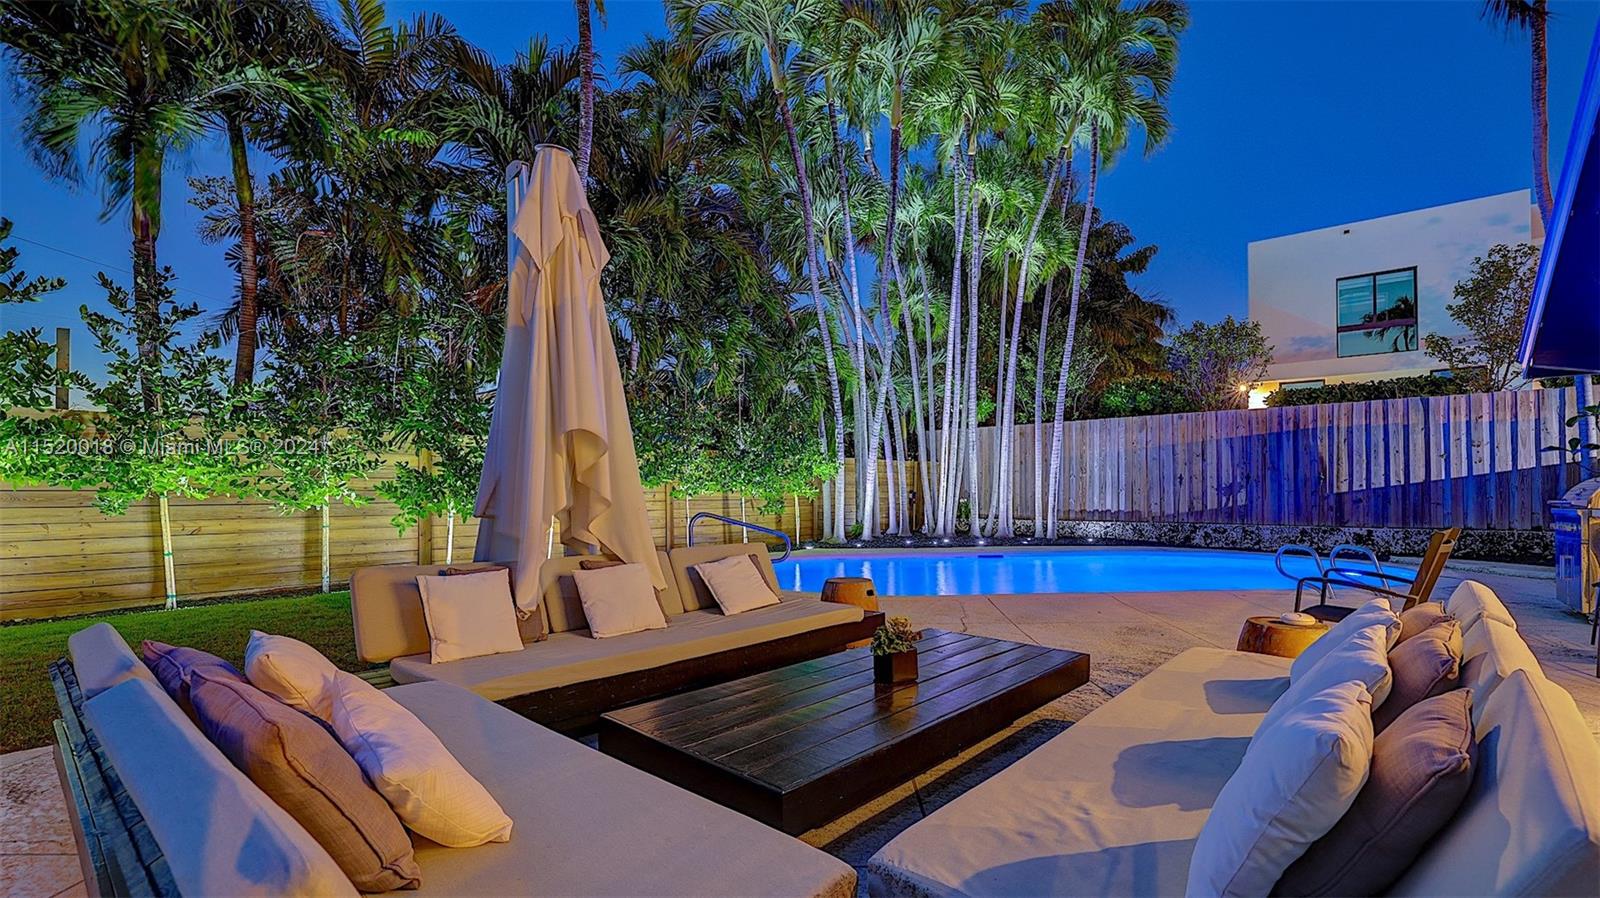 Property for Sale at 5250 Alton Rd, Miami Beach, Miami-Dade County, Florida - Bedrooms: 4 
Bathrooms: 3  - $2,295,000